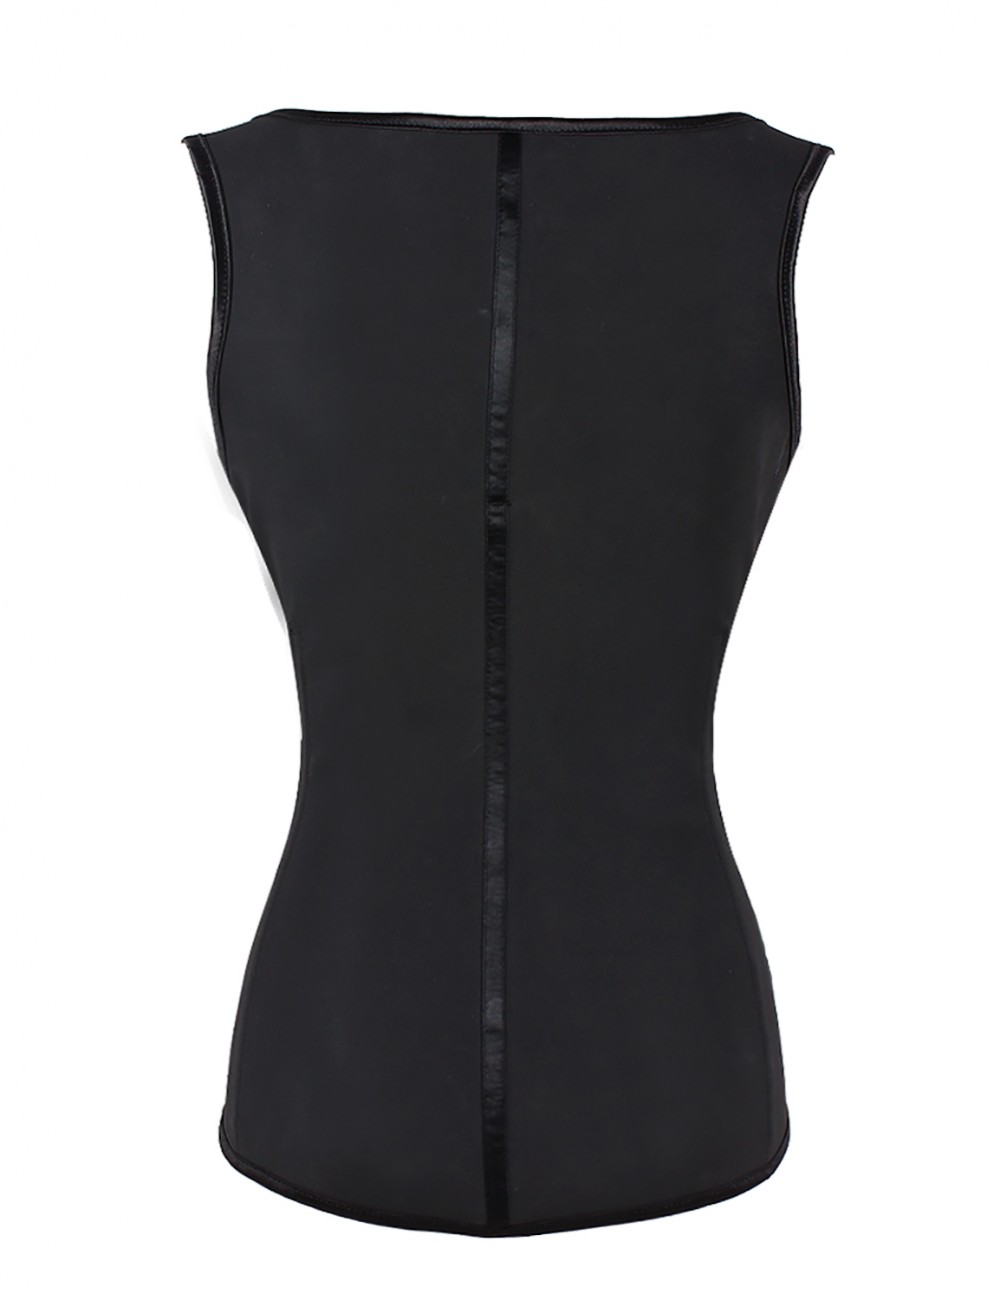 Fabulous Fit Black 4 Hooks Latex Thermal Waist Cincher Vest